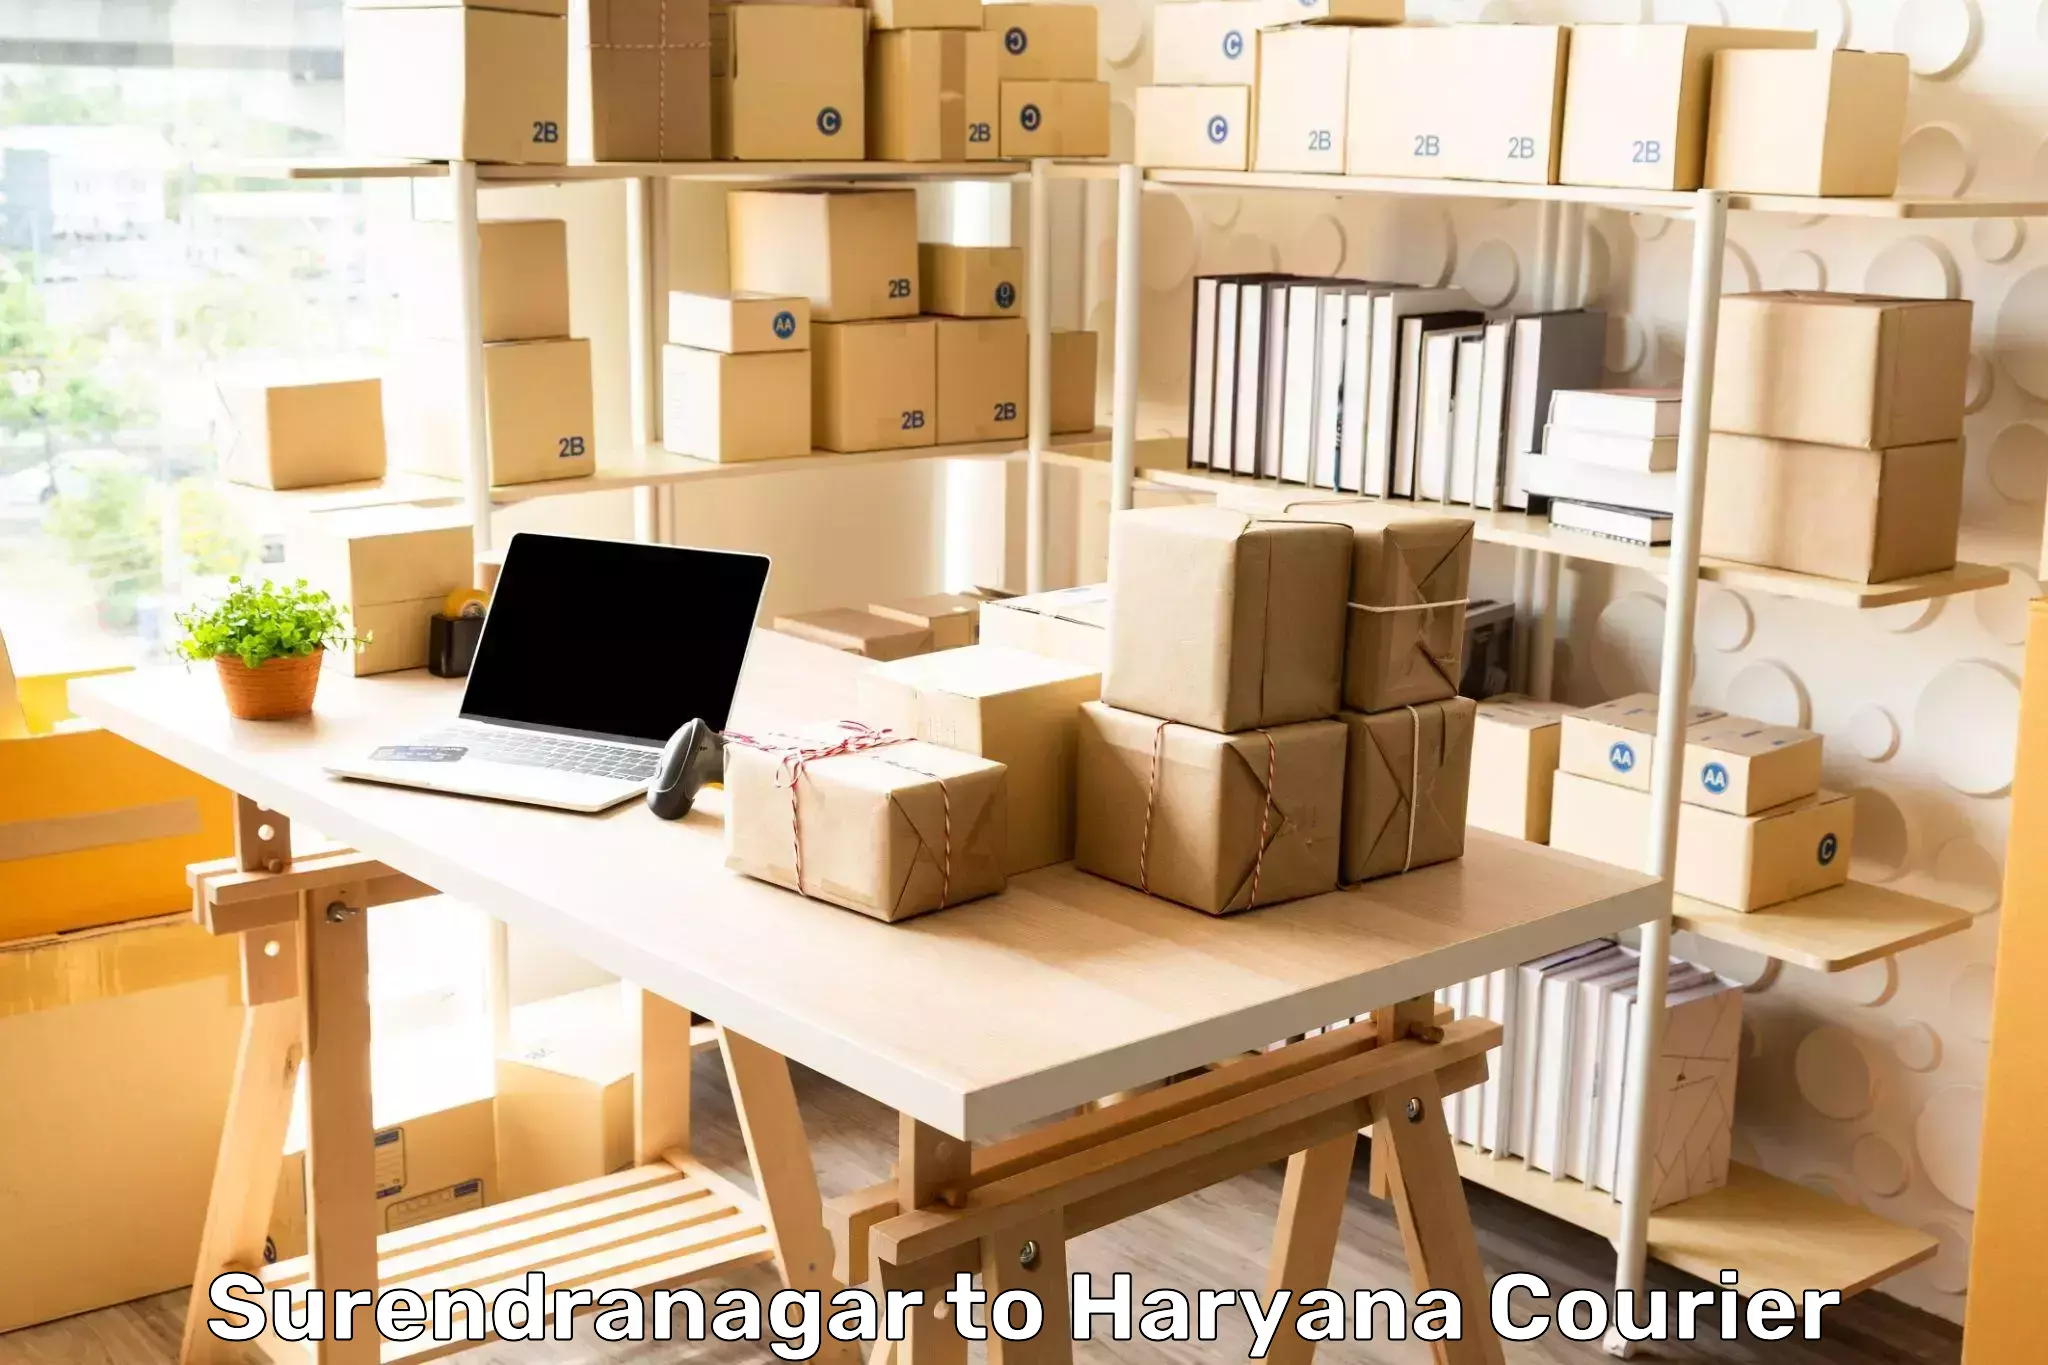 High-speed parcel service Surendranagar to Abhimanyupur